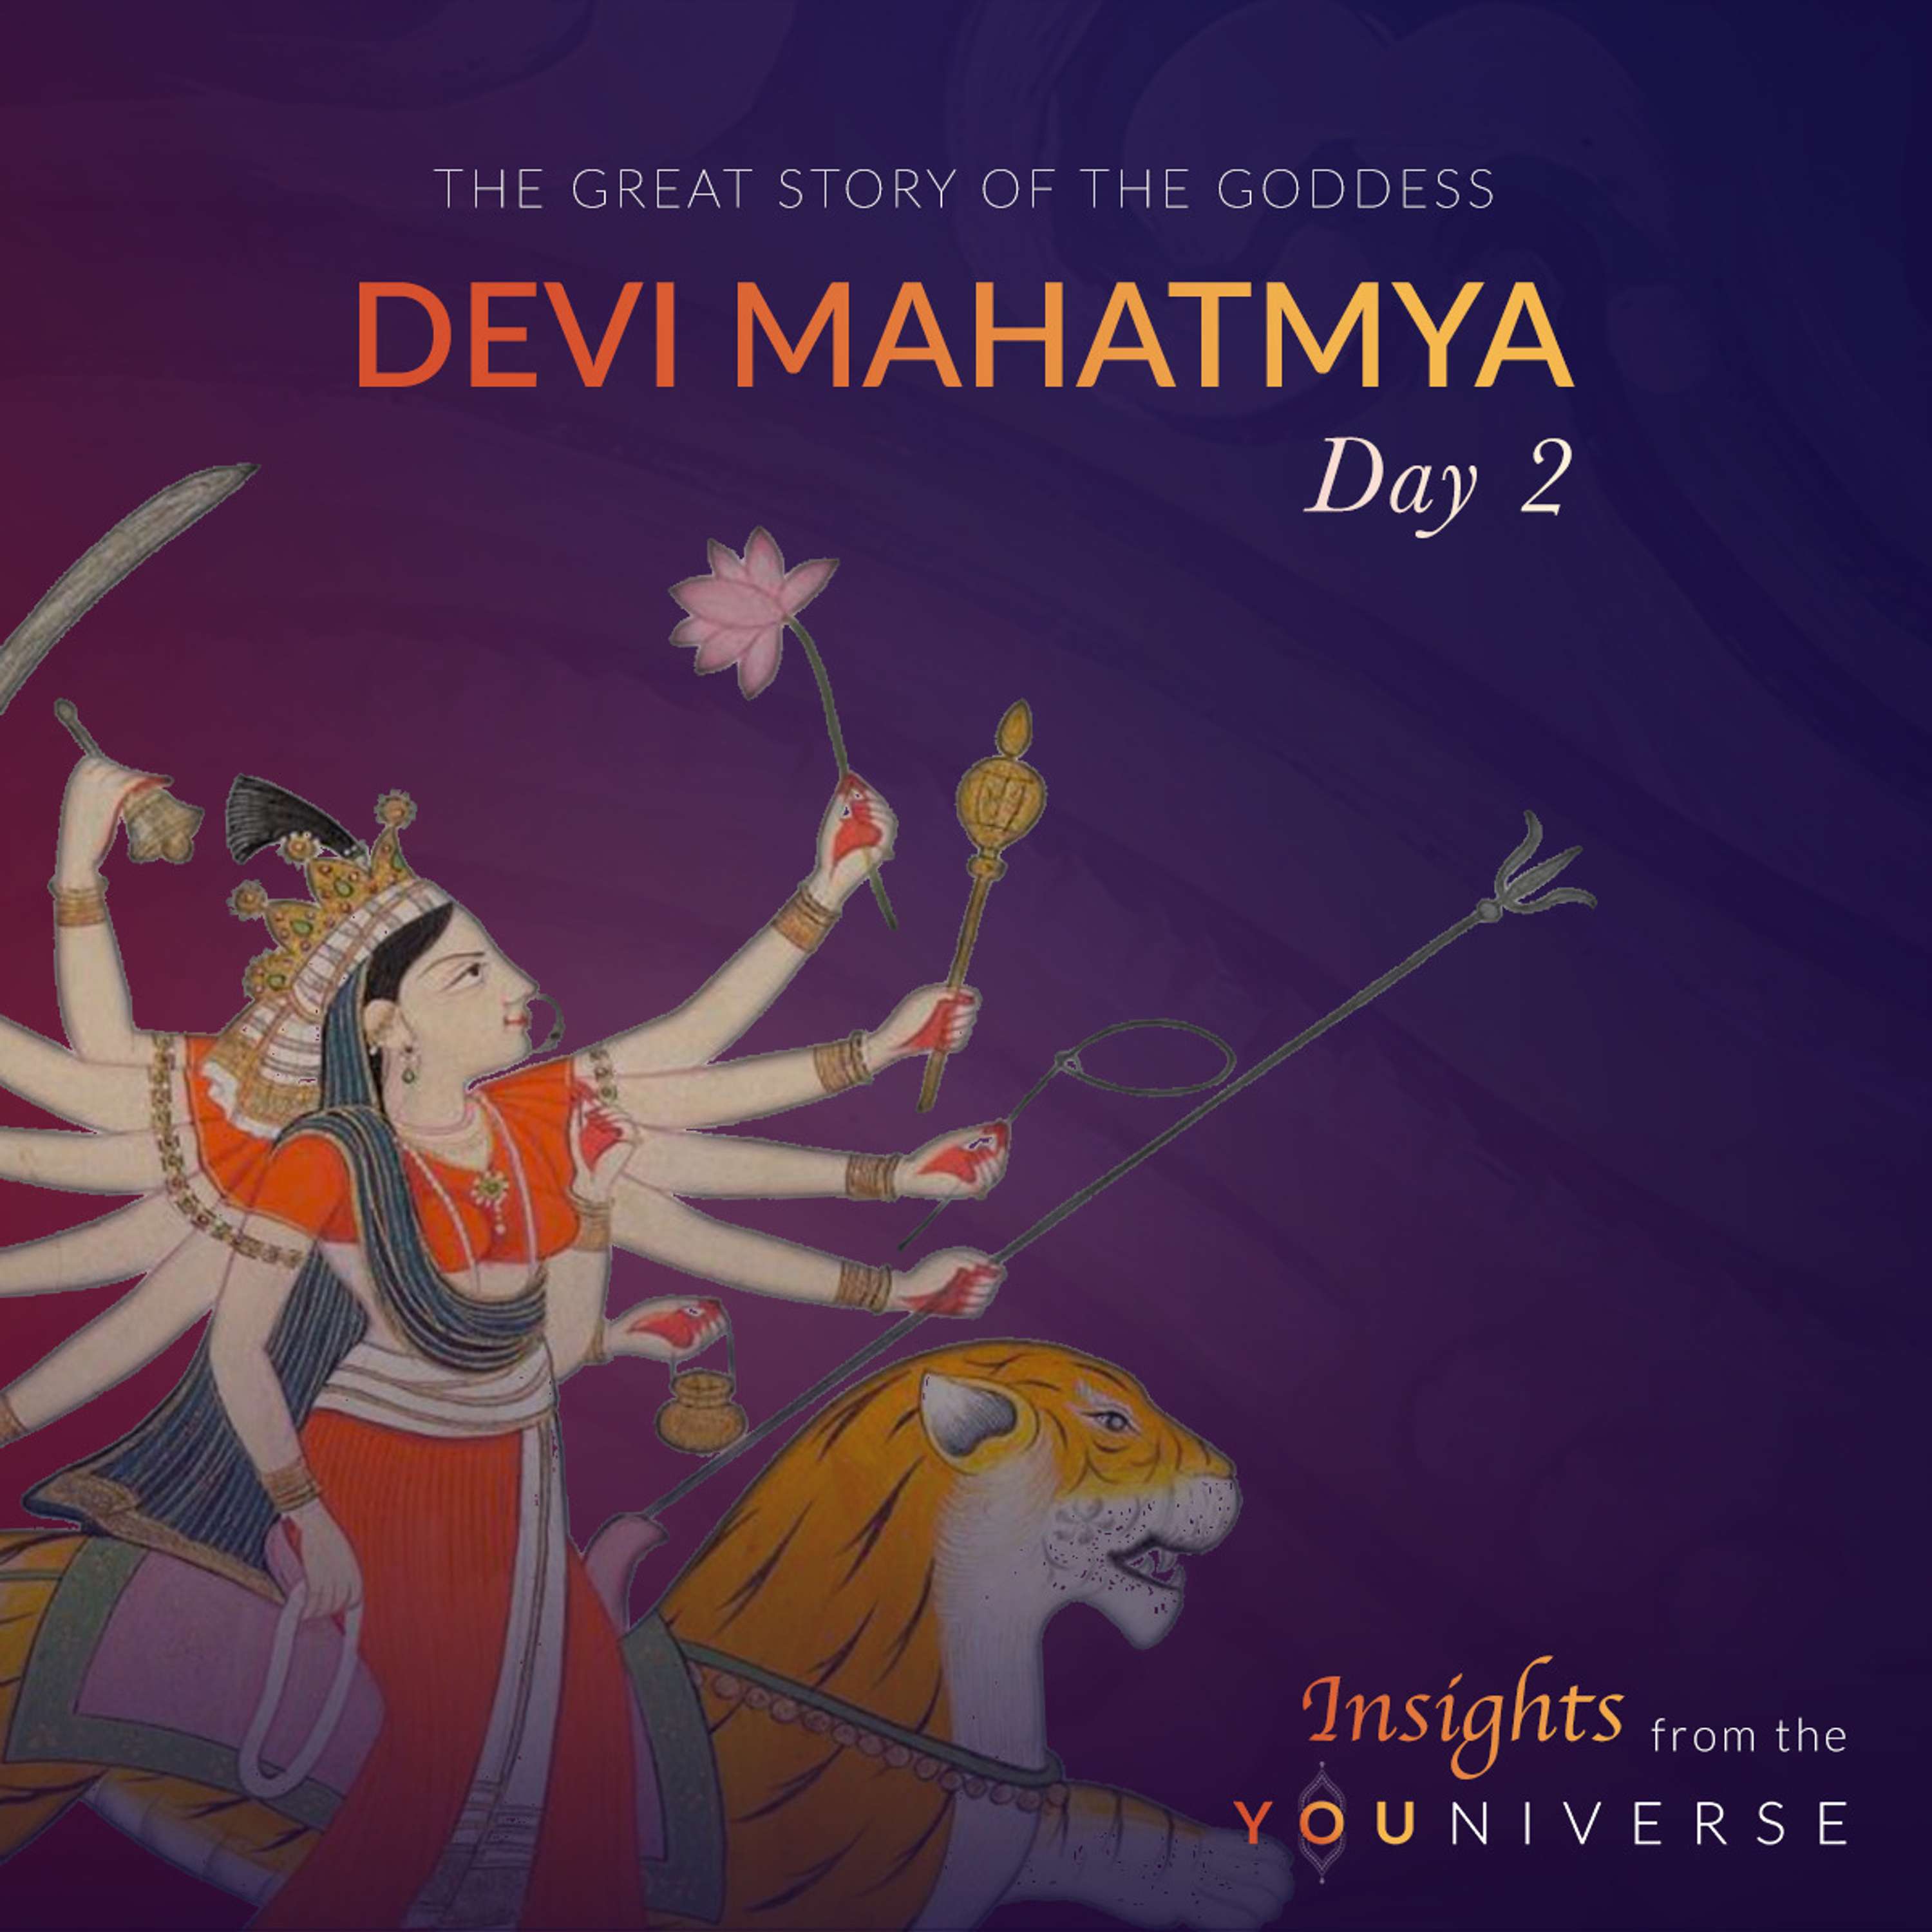 Devi Mahatmya - Day 2: Chapters 2-4